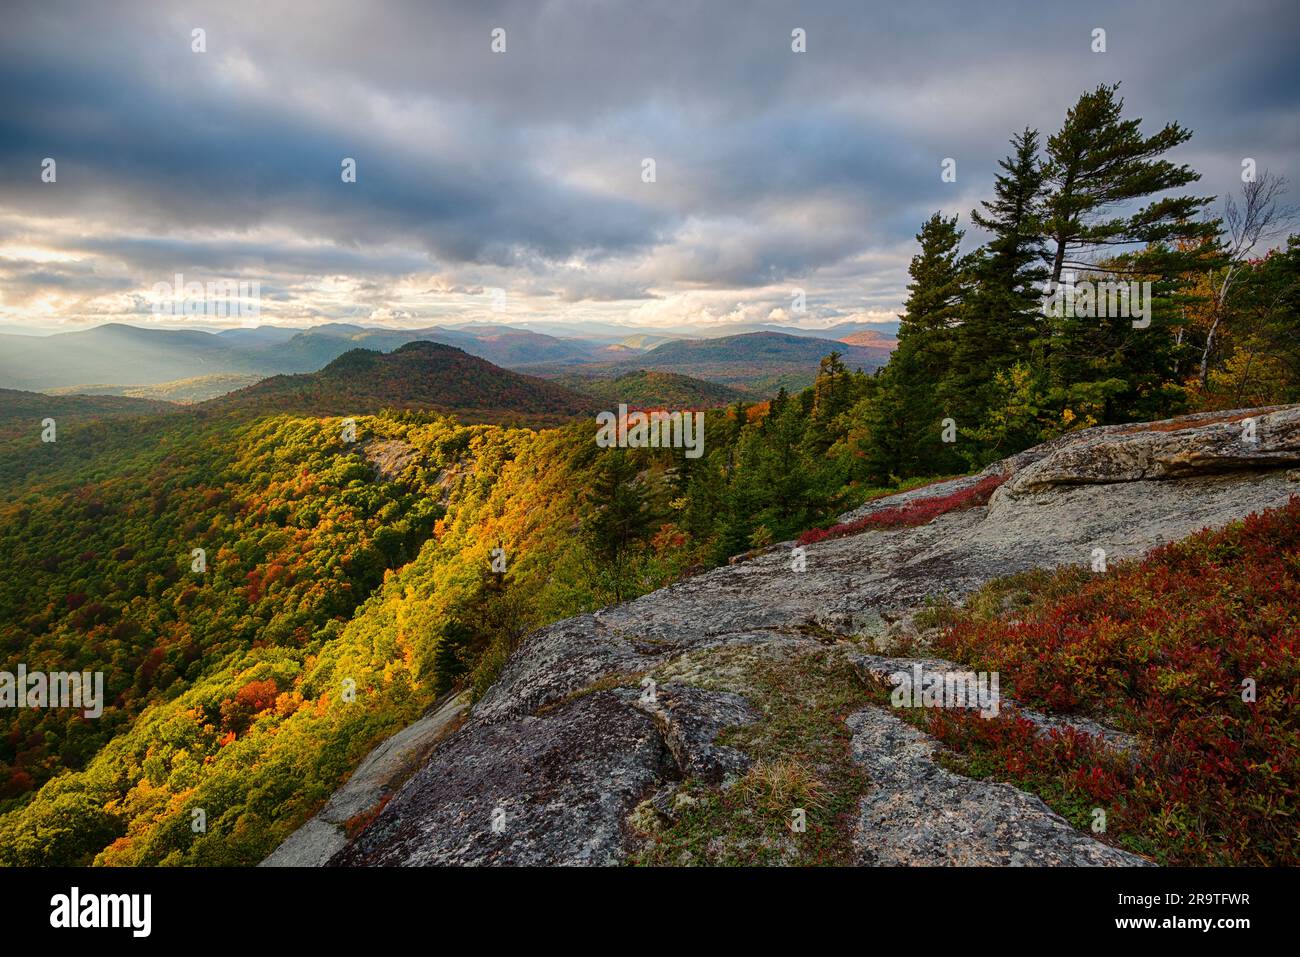 Mountain landscape from Moxham Mountain in autumn, Adirondack Mountains, New York, USA Stock Photo